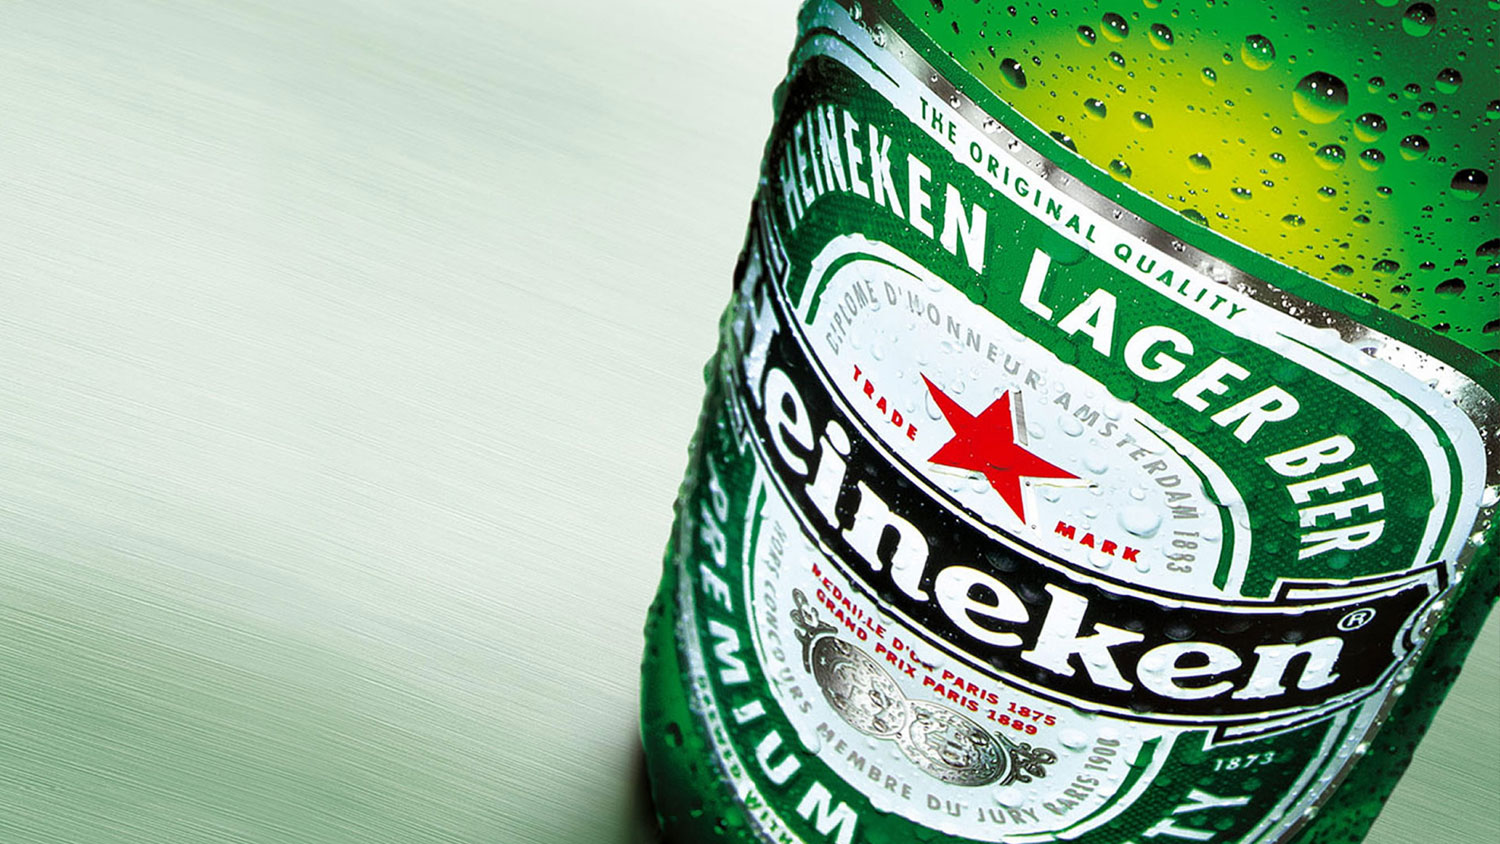 Heineken populairste biermerk in Hollands Kroon